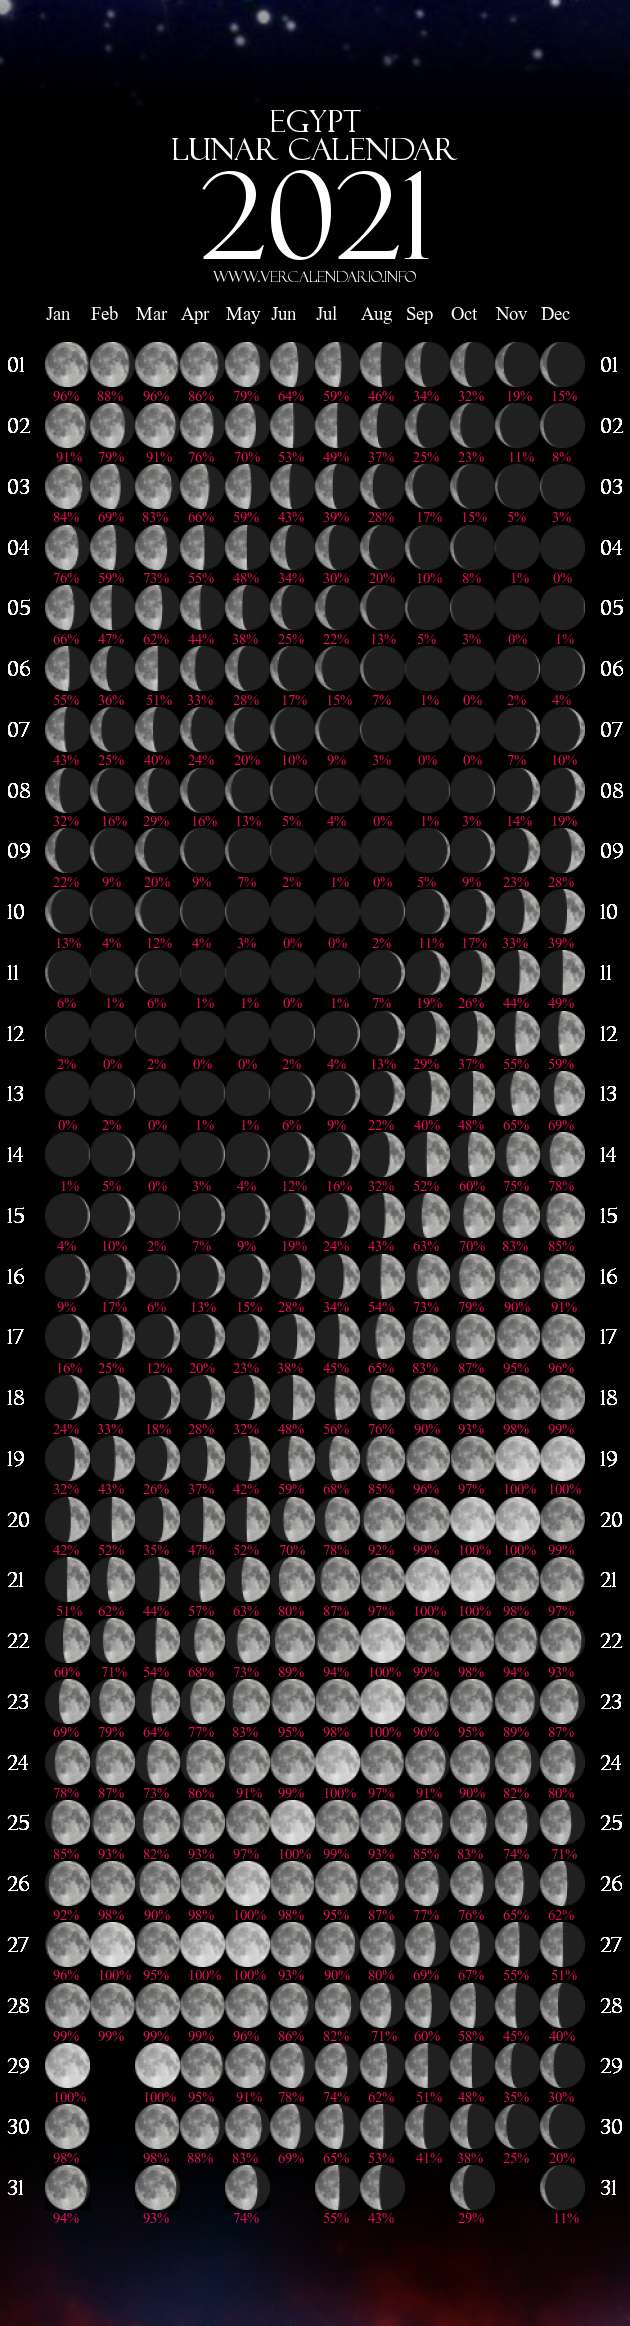 Lunar Calendar 2021 (Egypt)